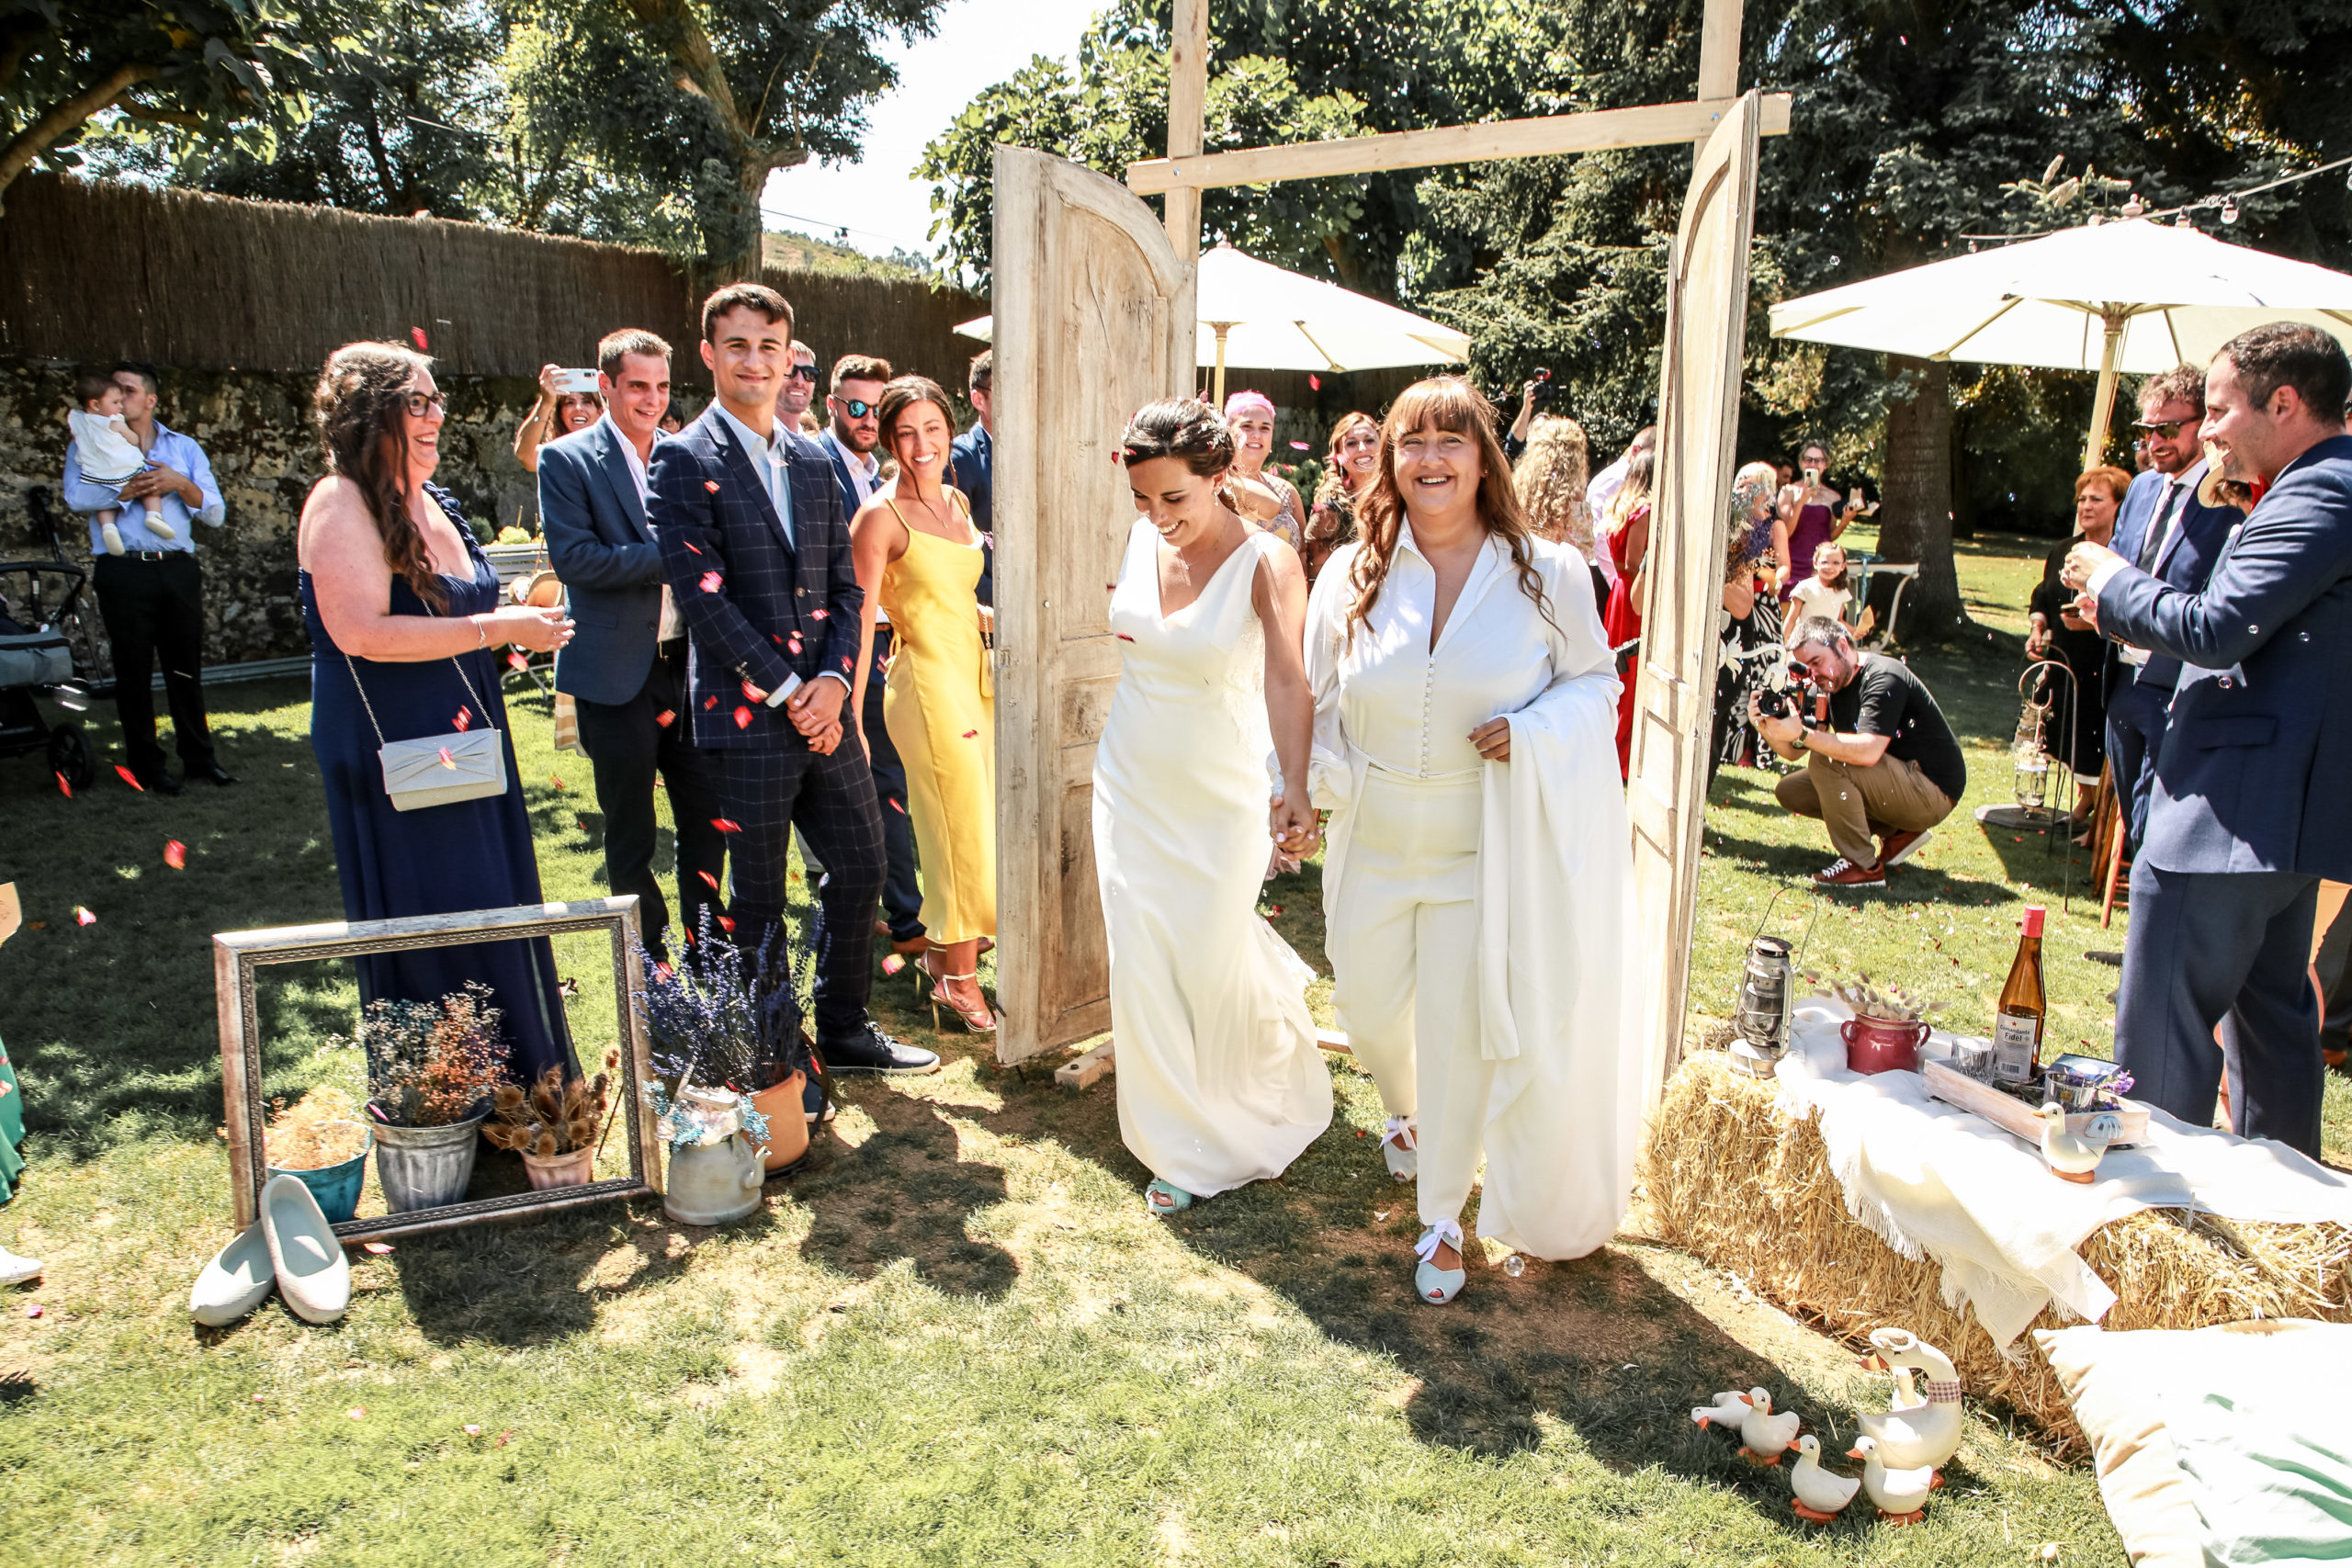 La boda de Paola y Olatz, una de las bodas más bonitas que se han celebrado recientemente en Bizkaia.